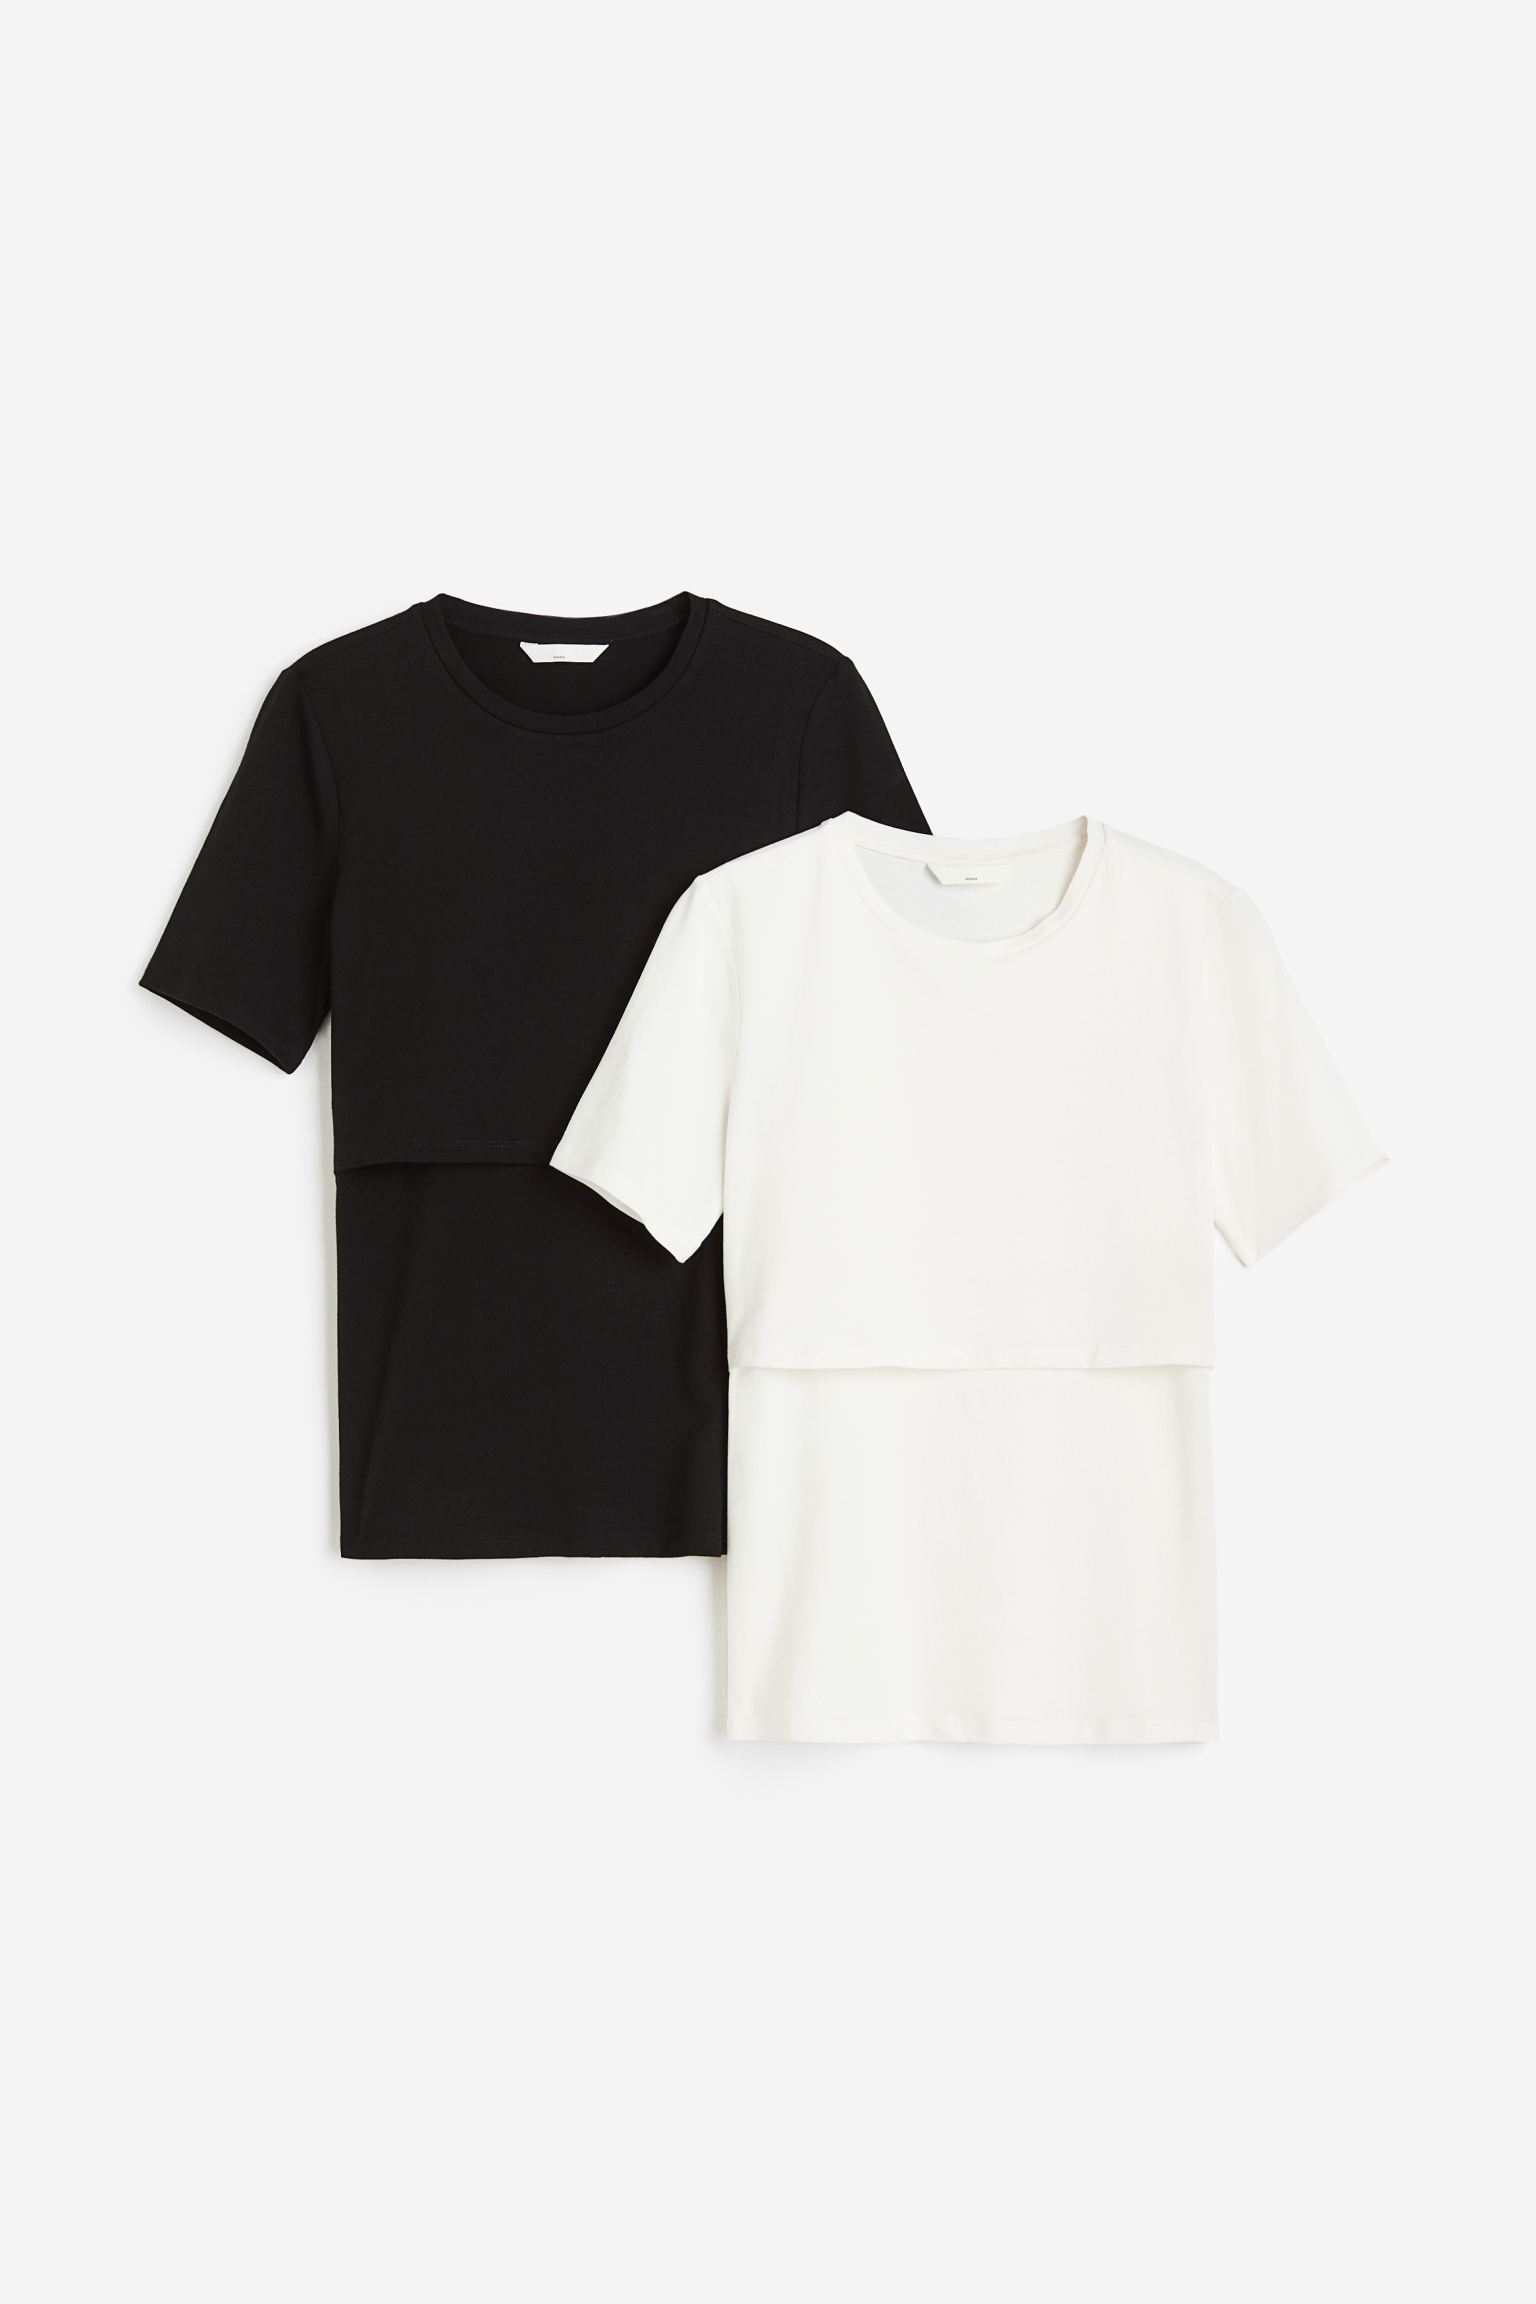 Комплект футболок женских H&M 1175052002 черных S (доставка из-за рубежа)